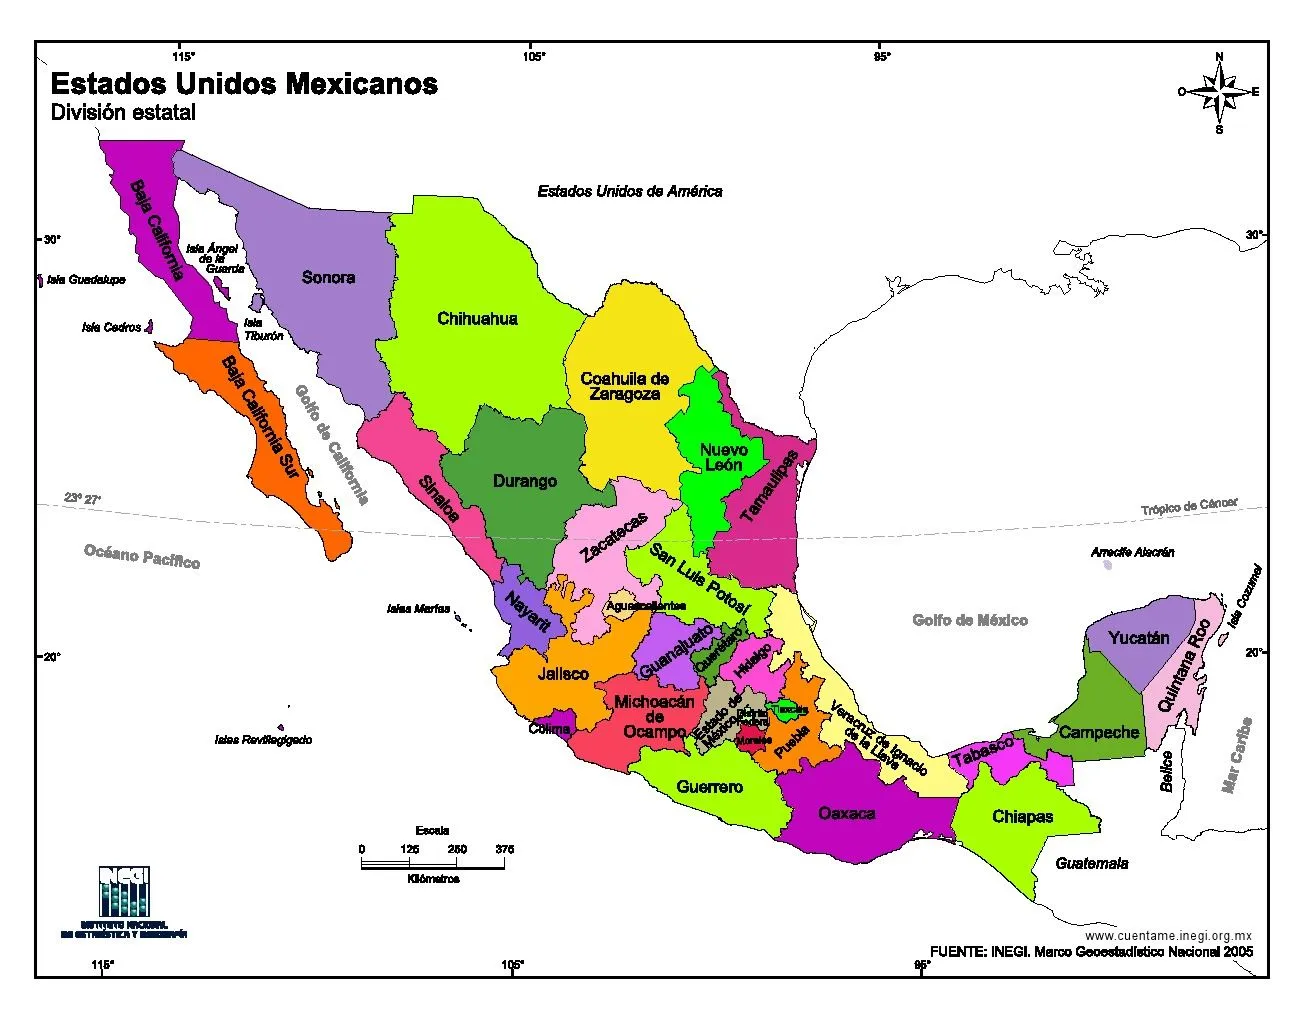 Mapa de México con nombres